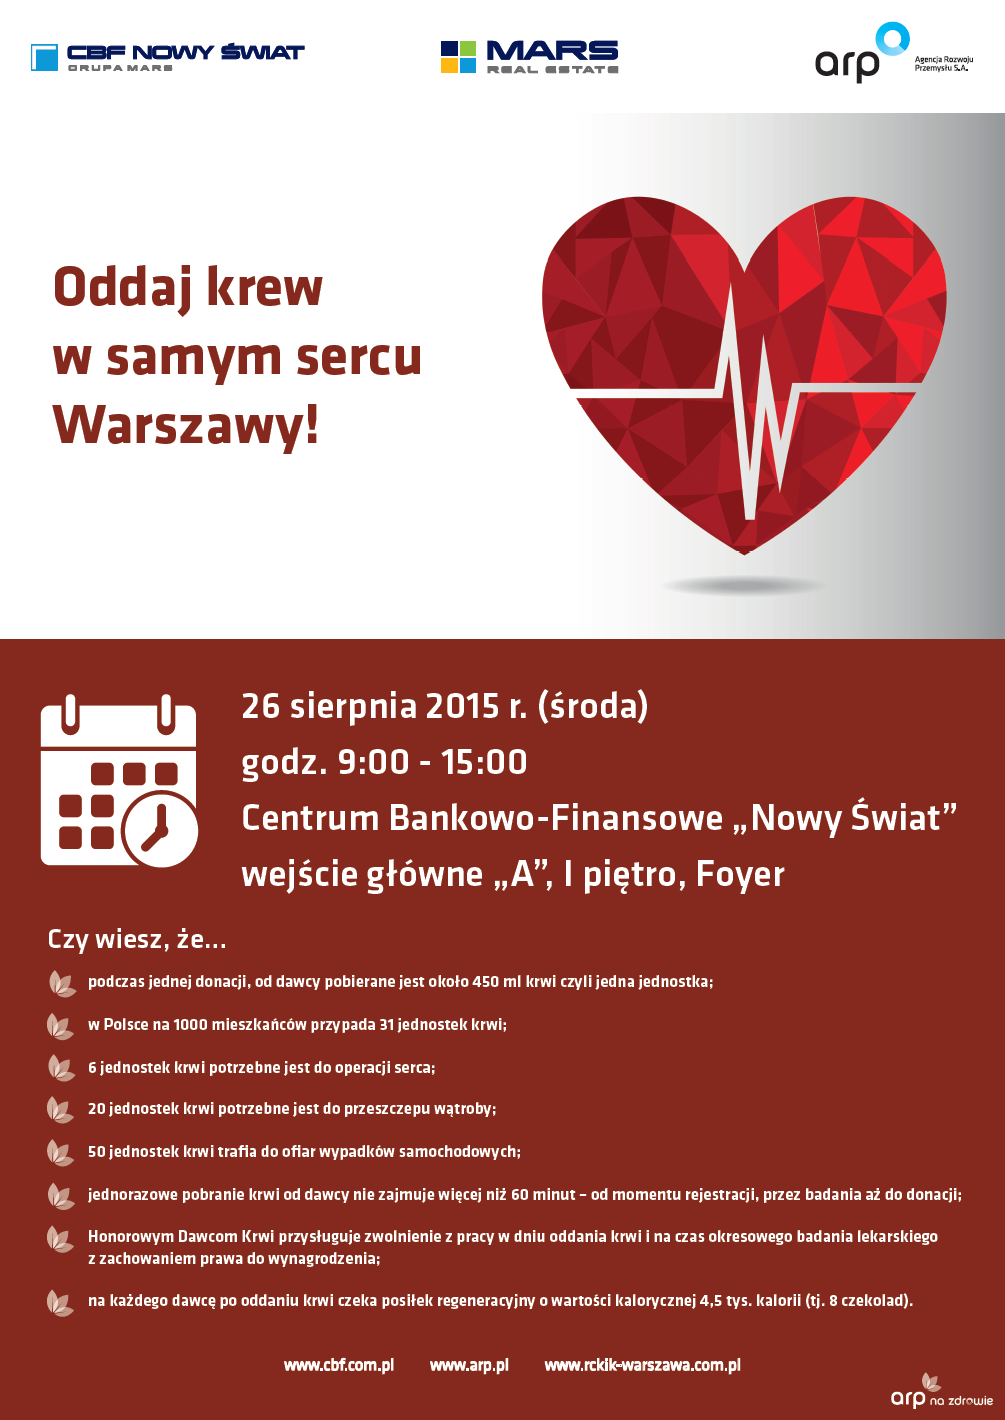 Oddaj krew w samym sercu Warszawy!